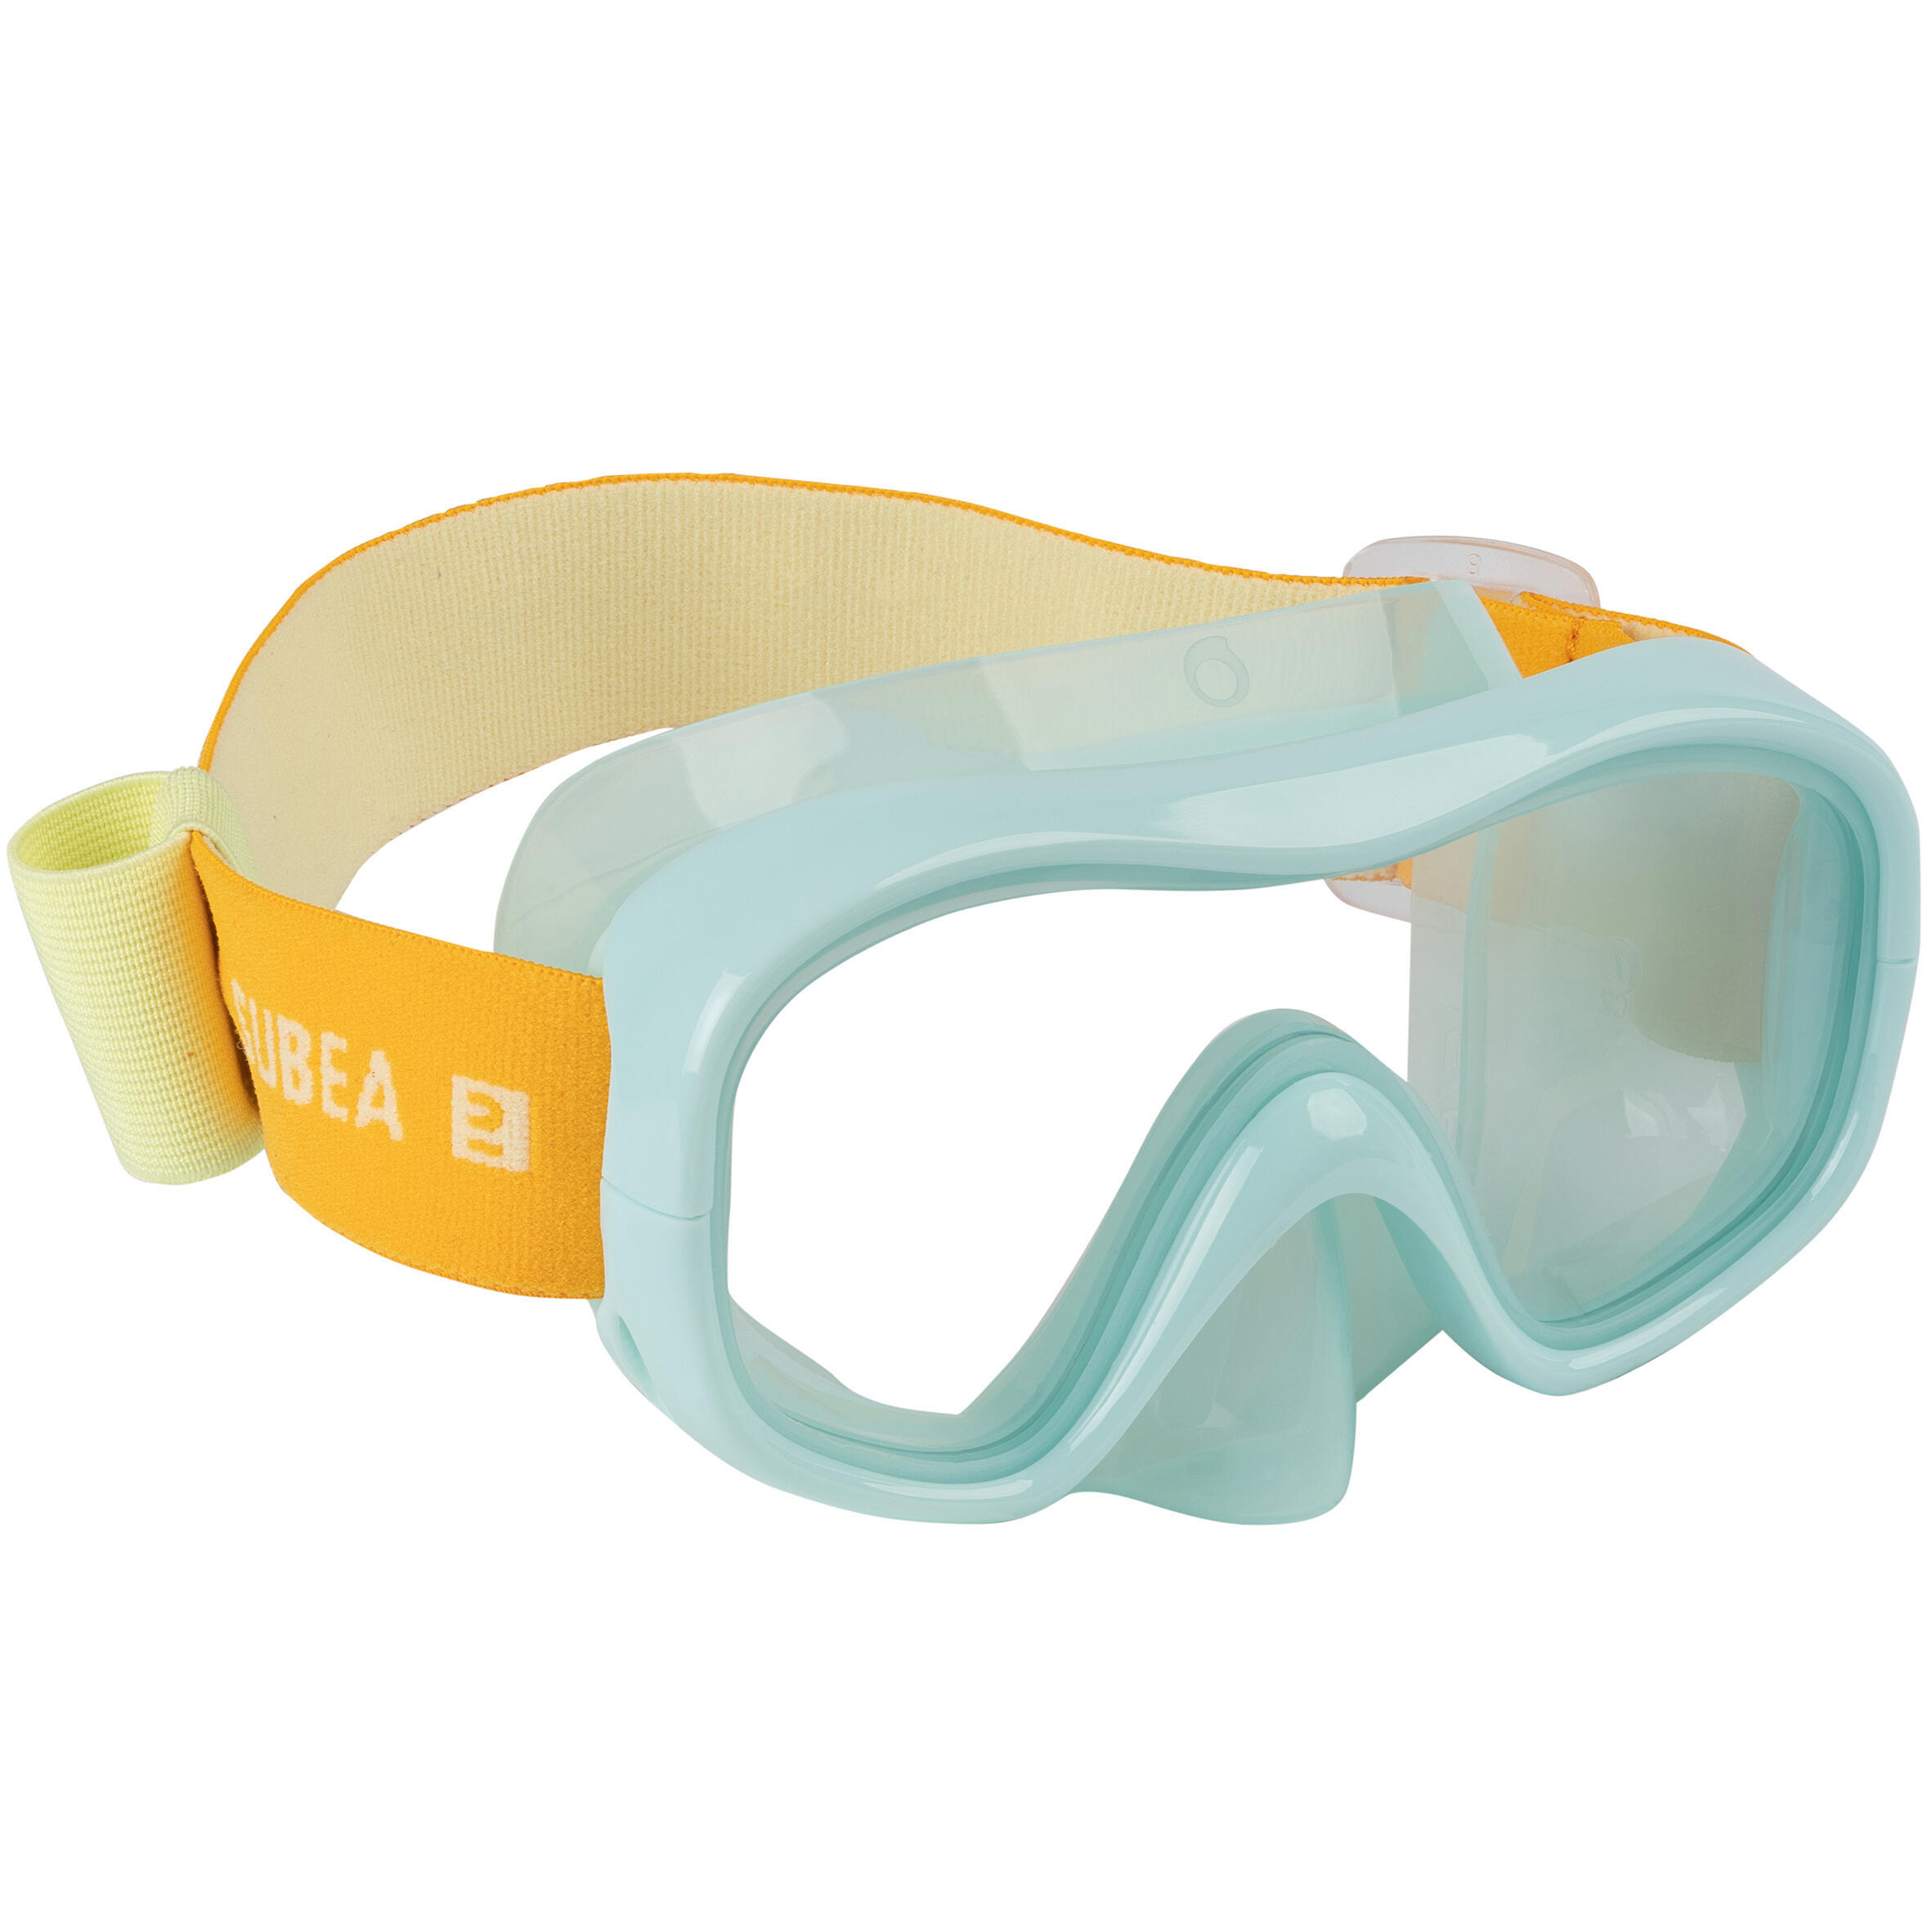 Детская маска для снорклинга SNK 520 поликарбонатная линза, светло-зеленый/желтый SUBEA, пастельный мятно-серый / пастельно-мятно-серый